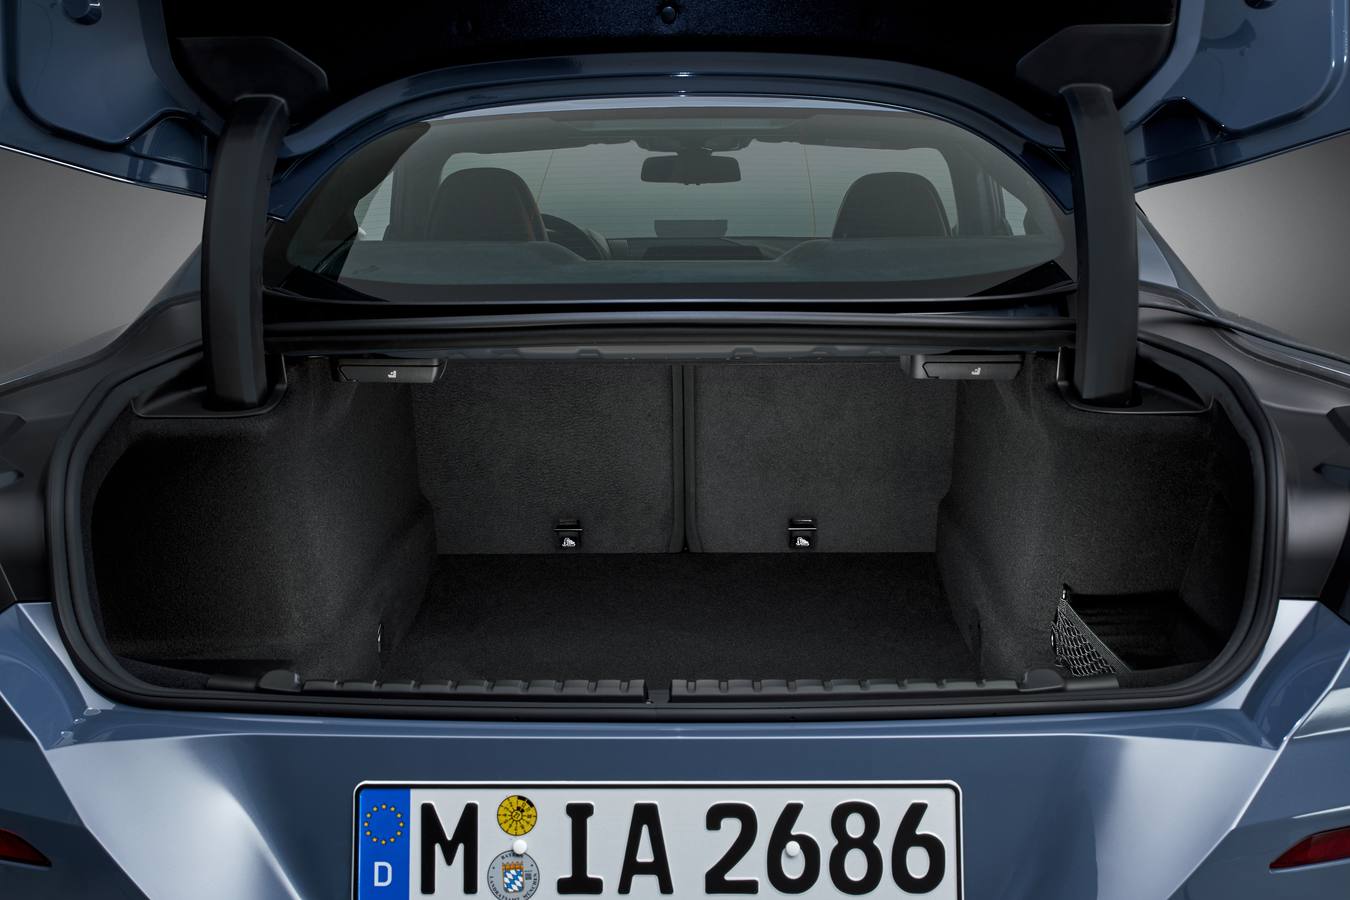 El nuevo cupé de BMW de la Serie 8 se venderá a partir de noviembre con un potente motor V8 de gasolina de 530 caballos y un seis cilindros diésel de 320 CV; en ambos casos con un cambio automático de ocho velocidades.